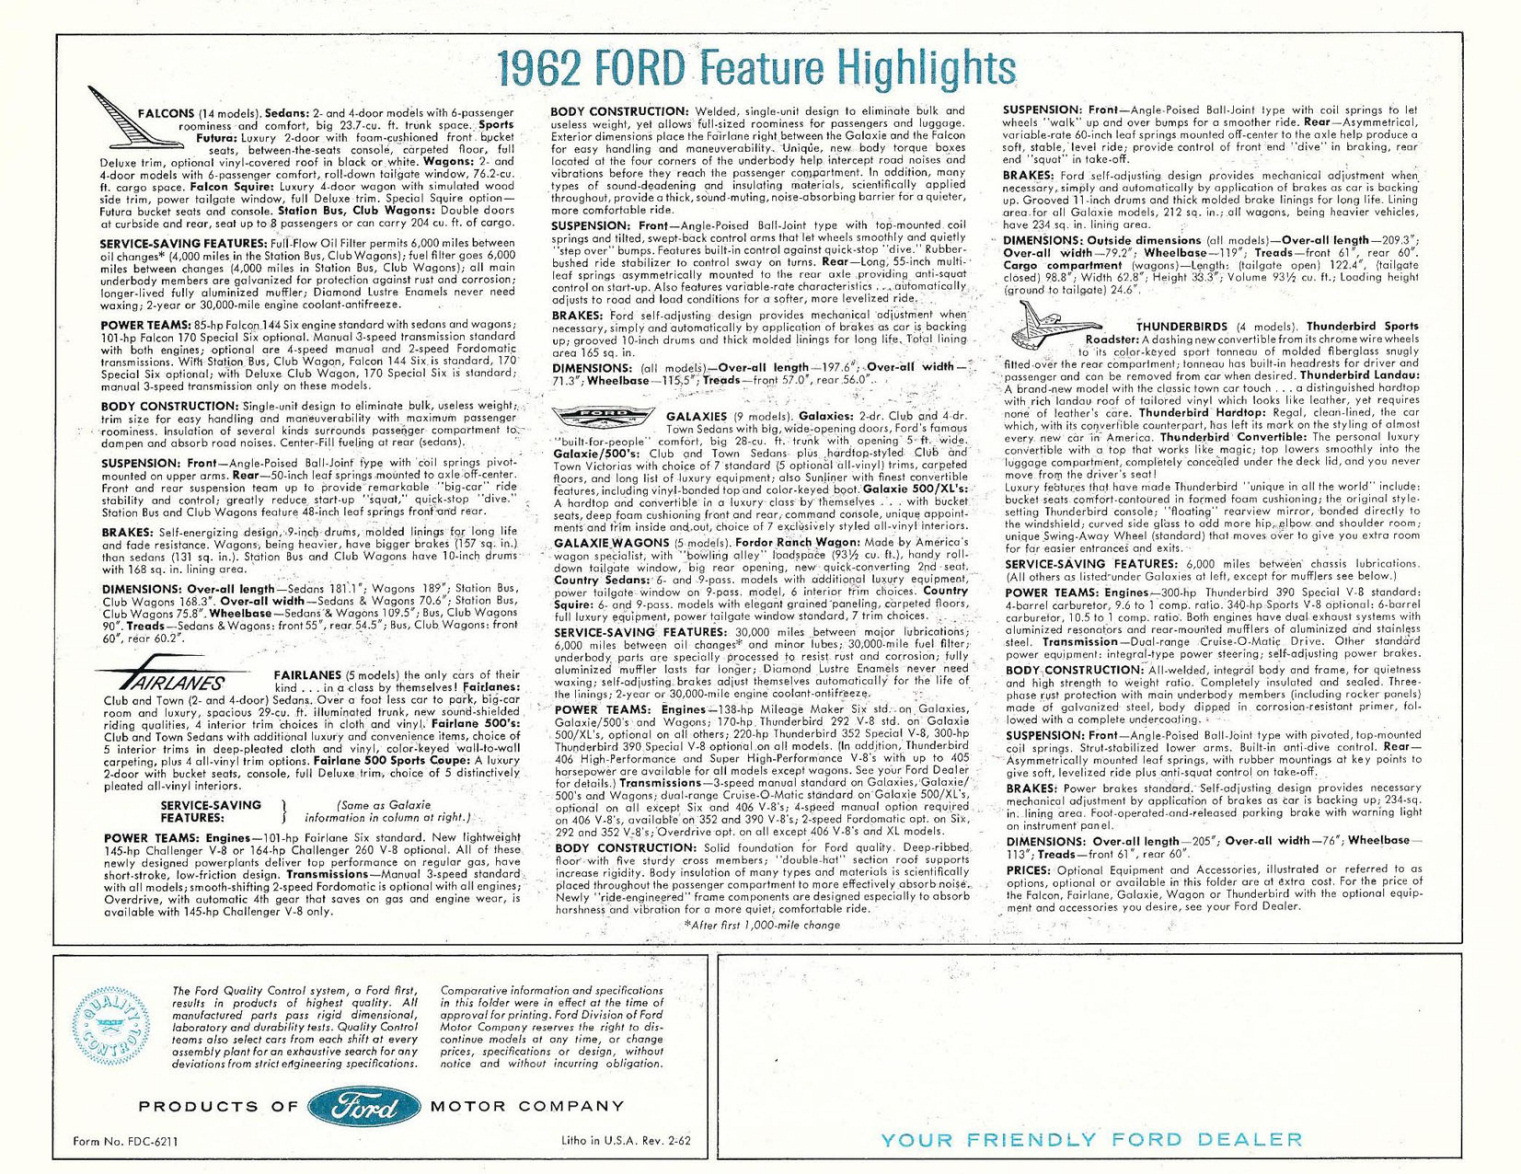 n_1962 Ford Full Line Foldout (62-02)-02.jpg